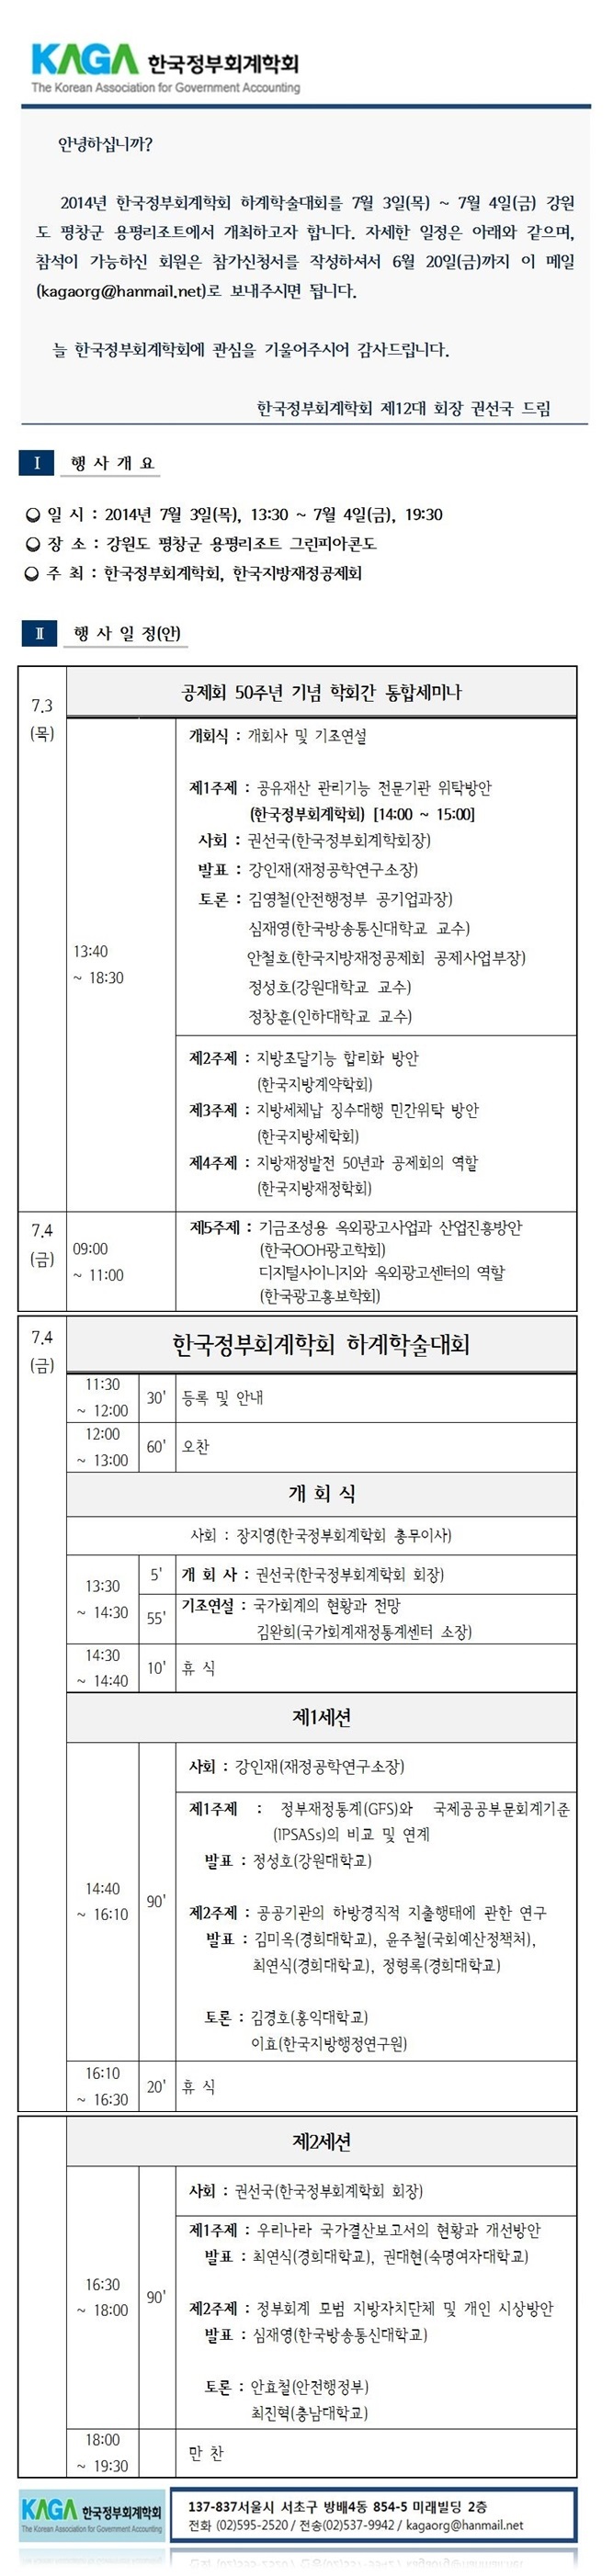 한국정부회계학회 - 하계학술대회(공고).jpg